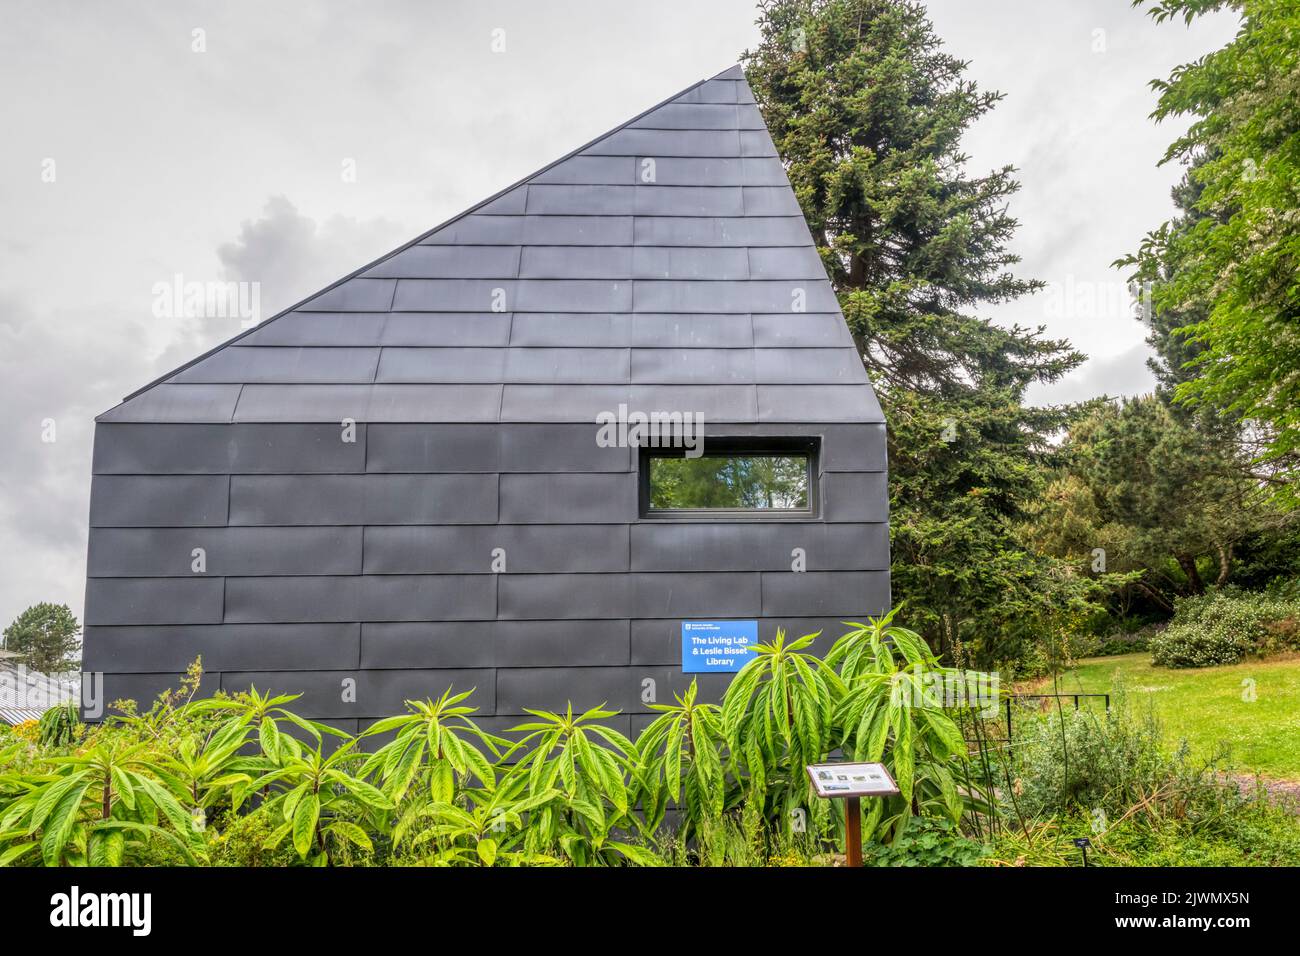 Le Macro micro Studio des jardins botaniques de l'Université de Dundee est un bâtiment hors réseau construit selon les normes de Passivhaus comme unité de démonstration. Banque D'Images